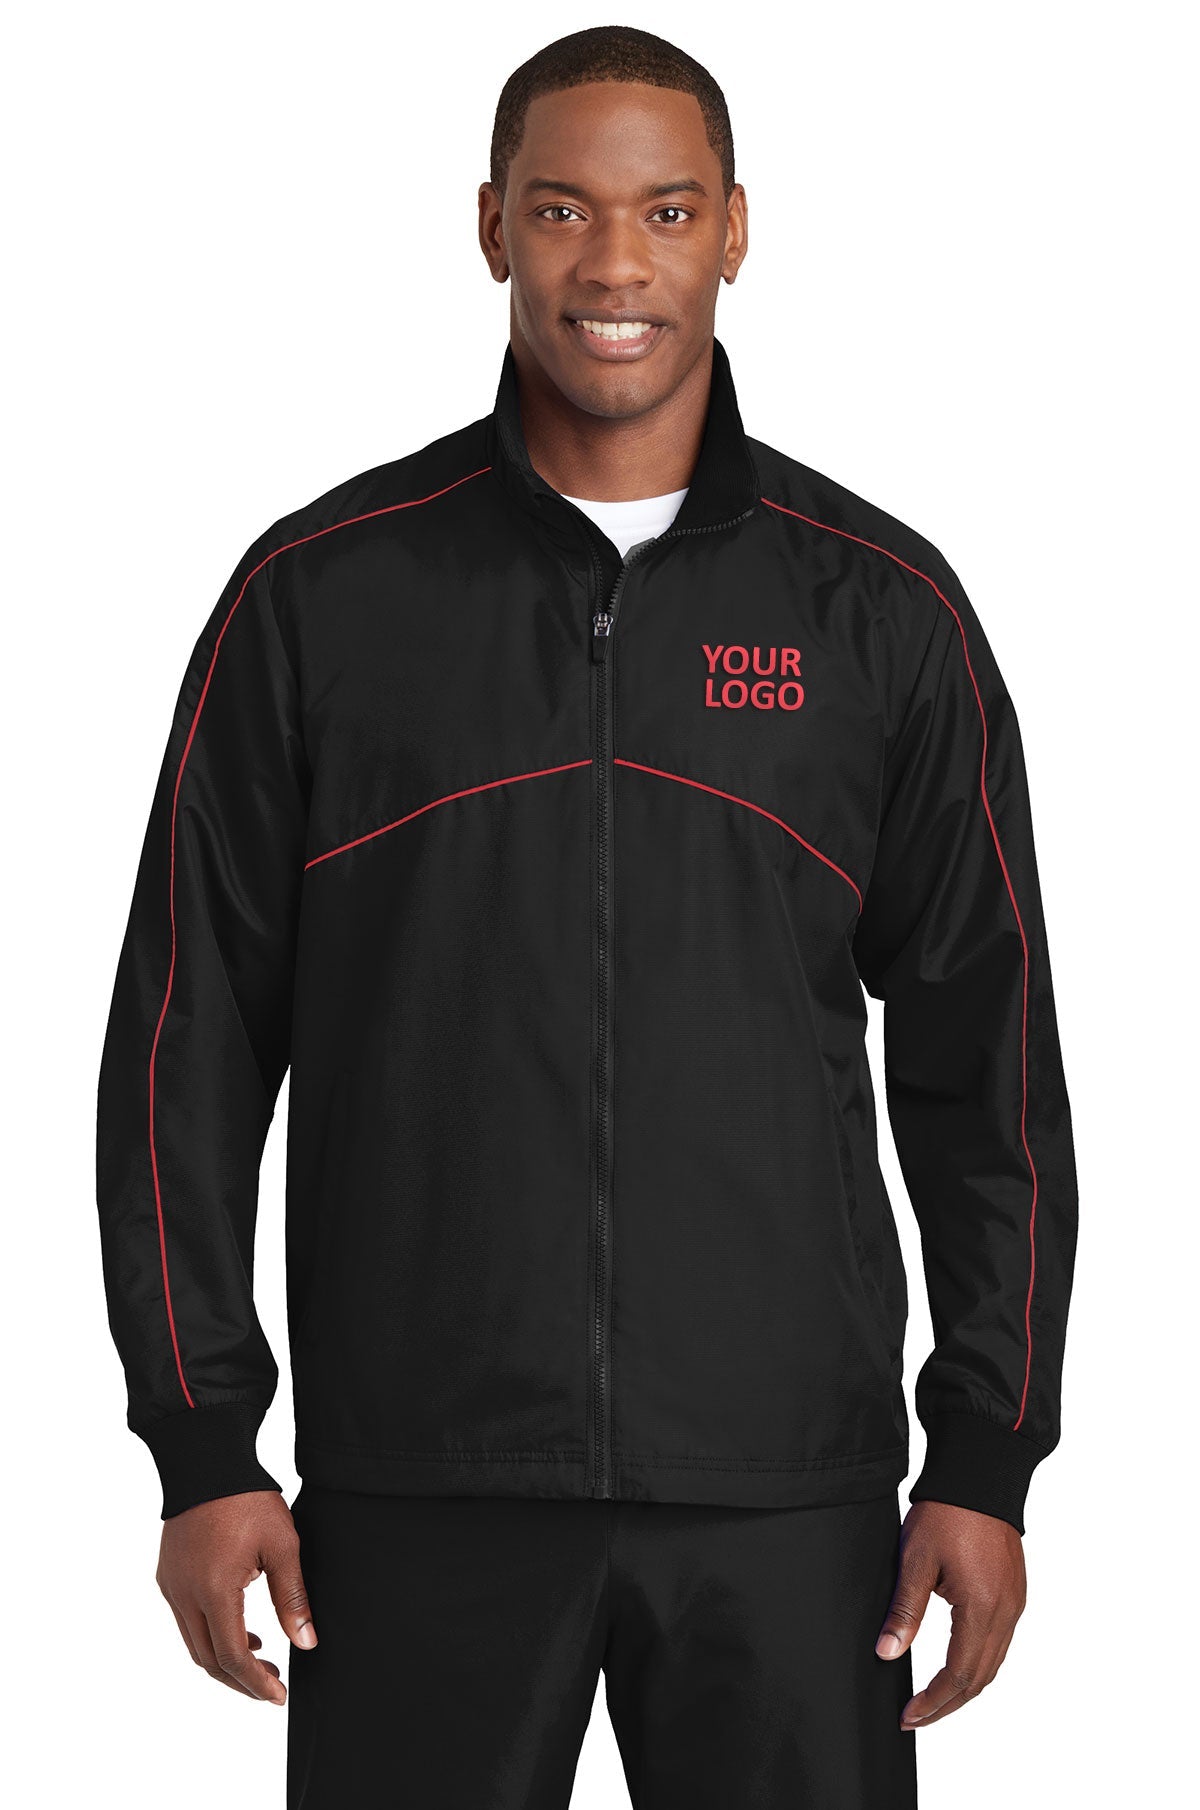 Sport-Tek Black/ True Red JST83 embroidered jacket custom